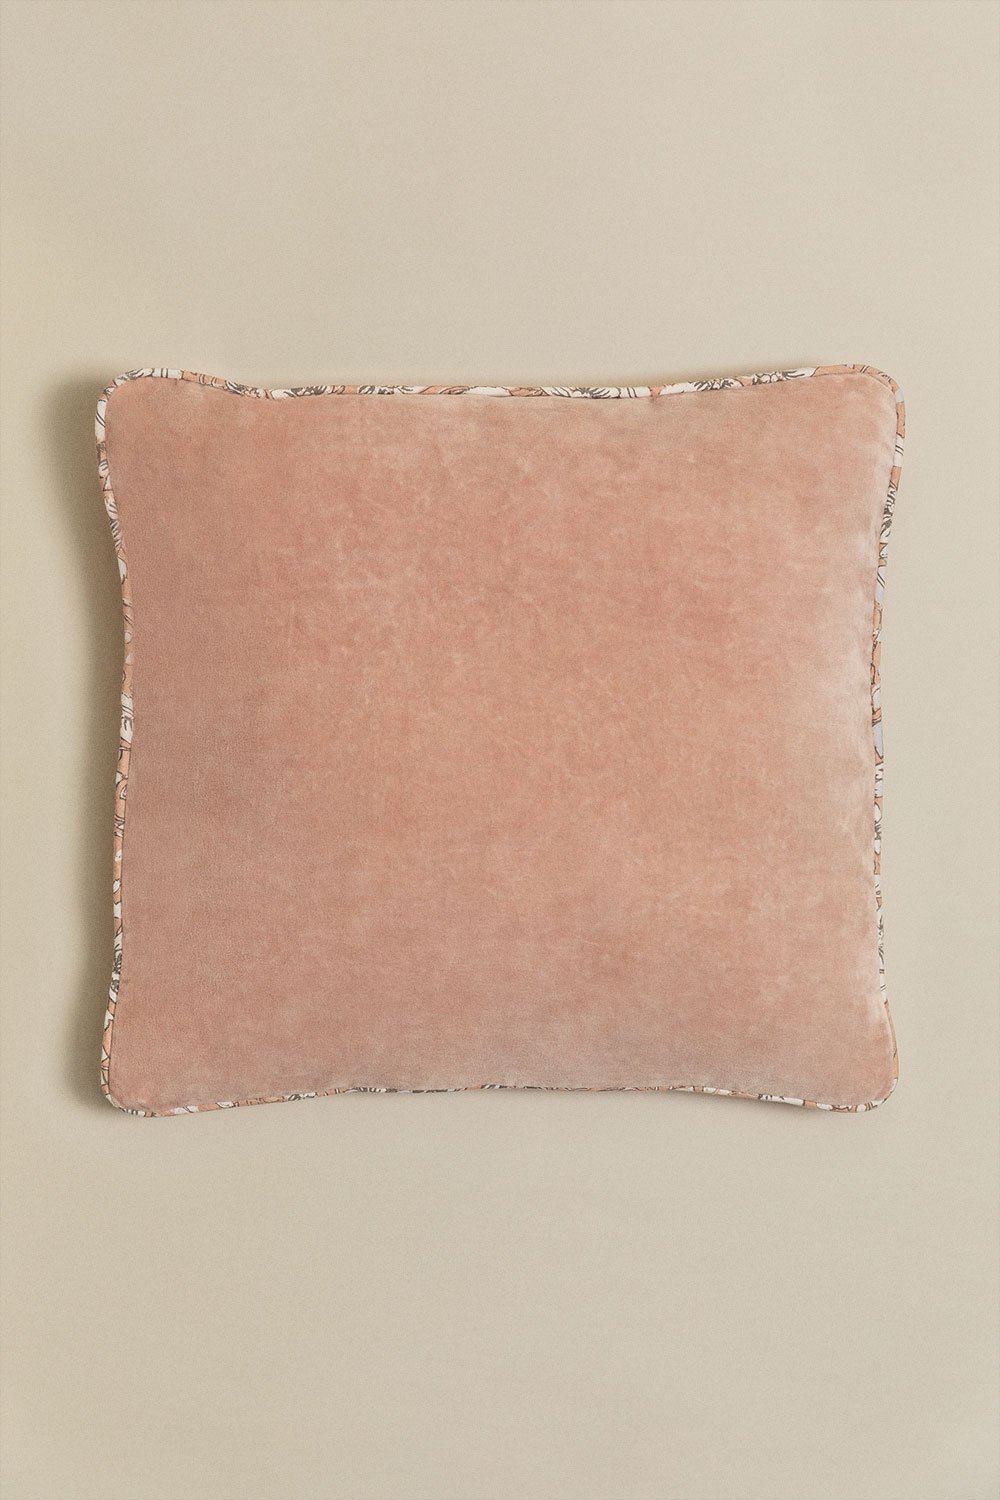 Kwadratowa poduszka aksamitna (45x45 cm) Arjona , obrazek w galerii 1